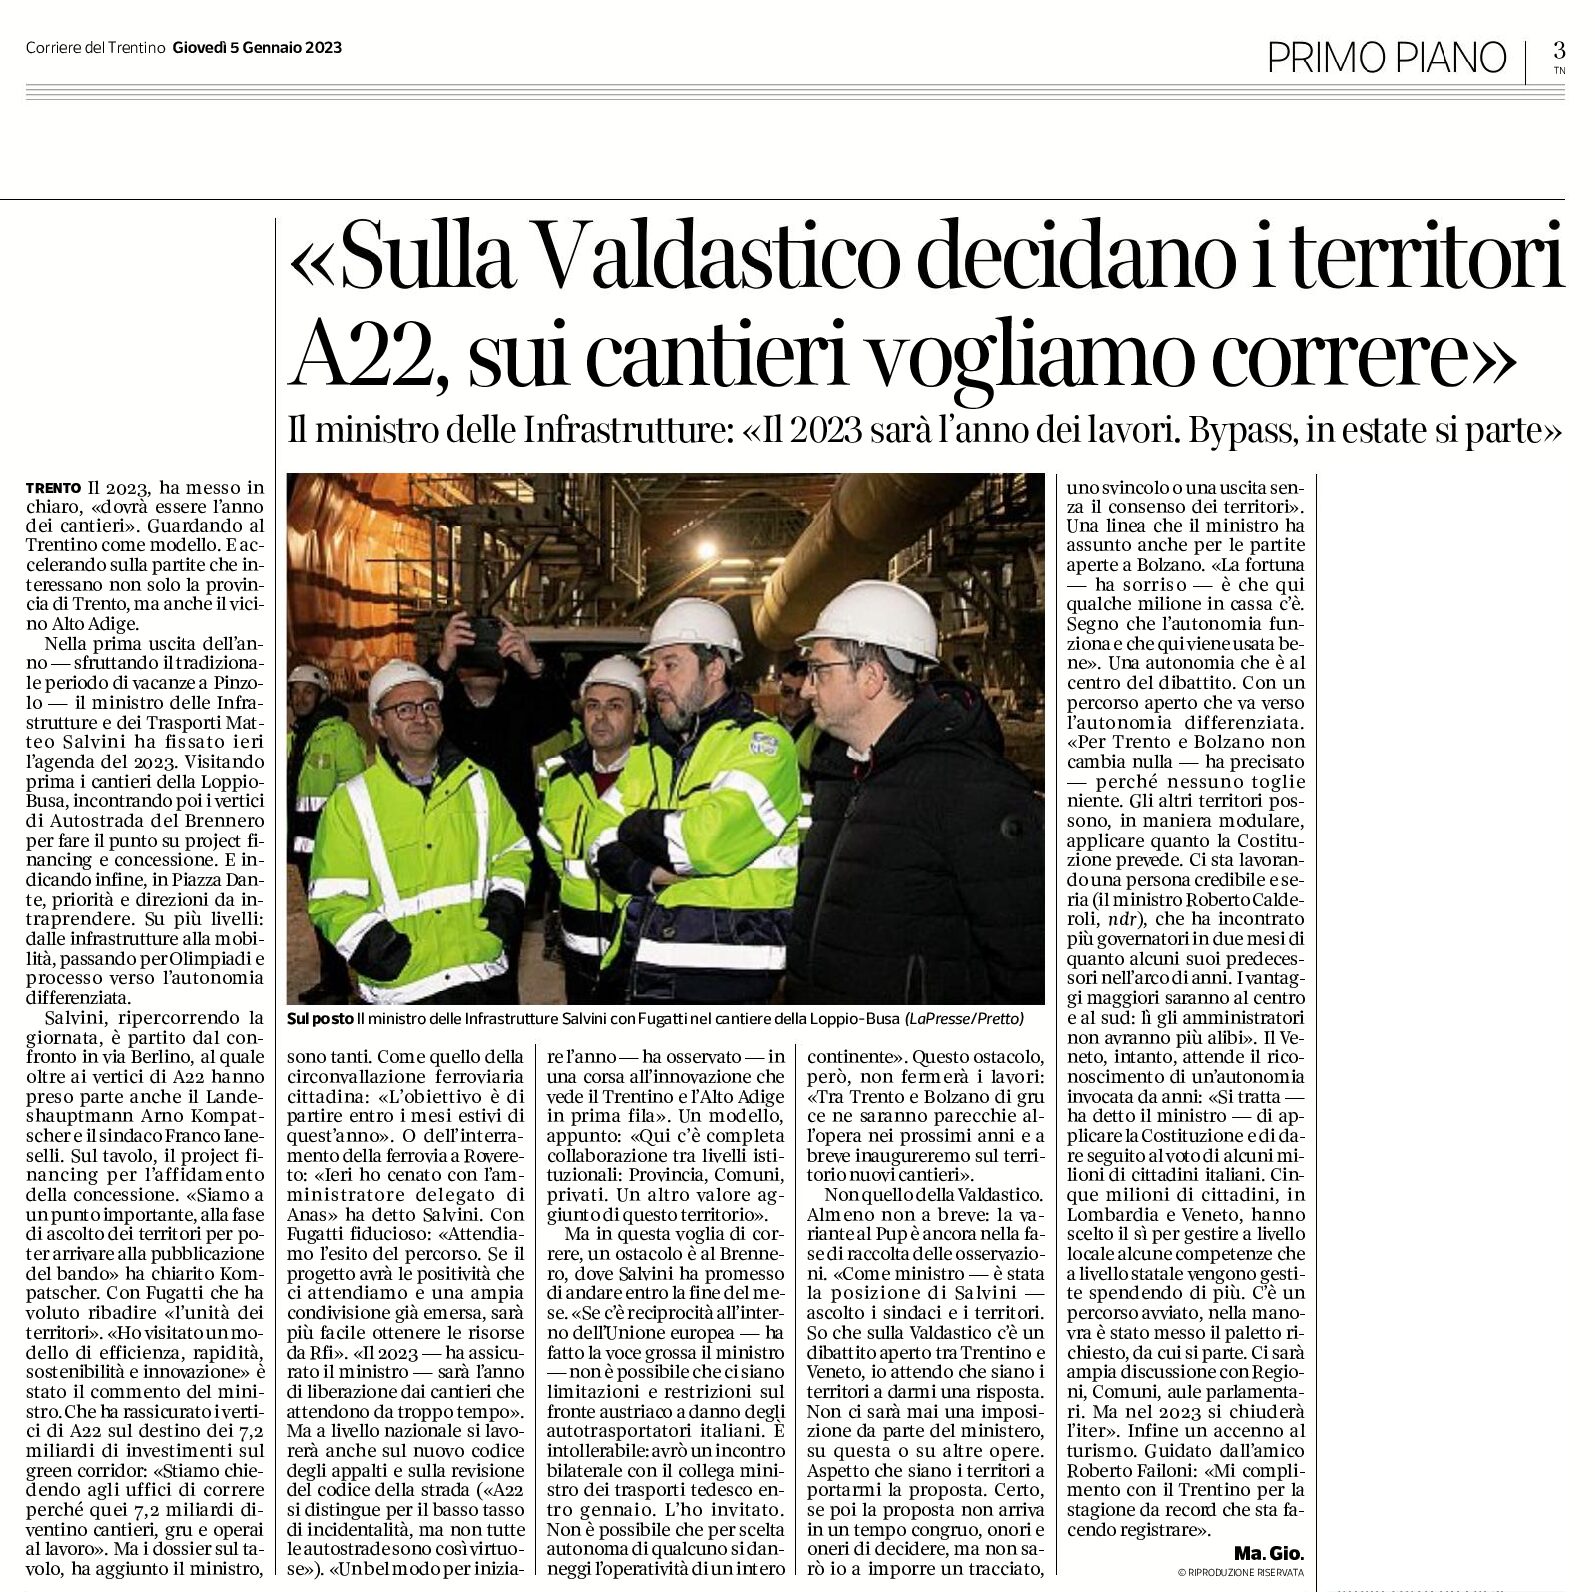 Sulla Valdastico: Salvini “decidano i territori”